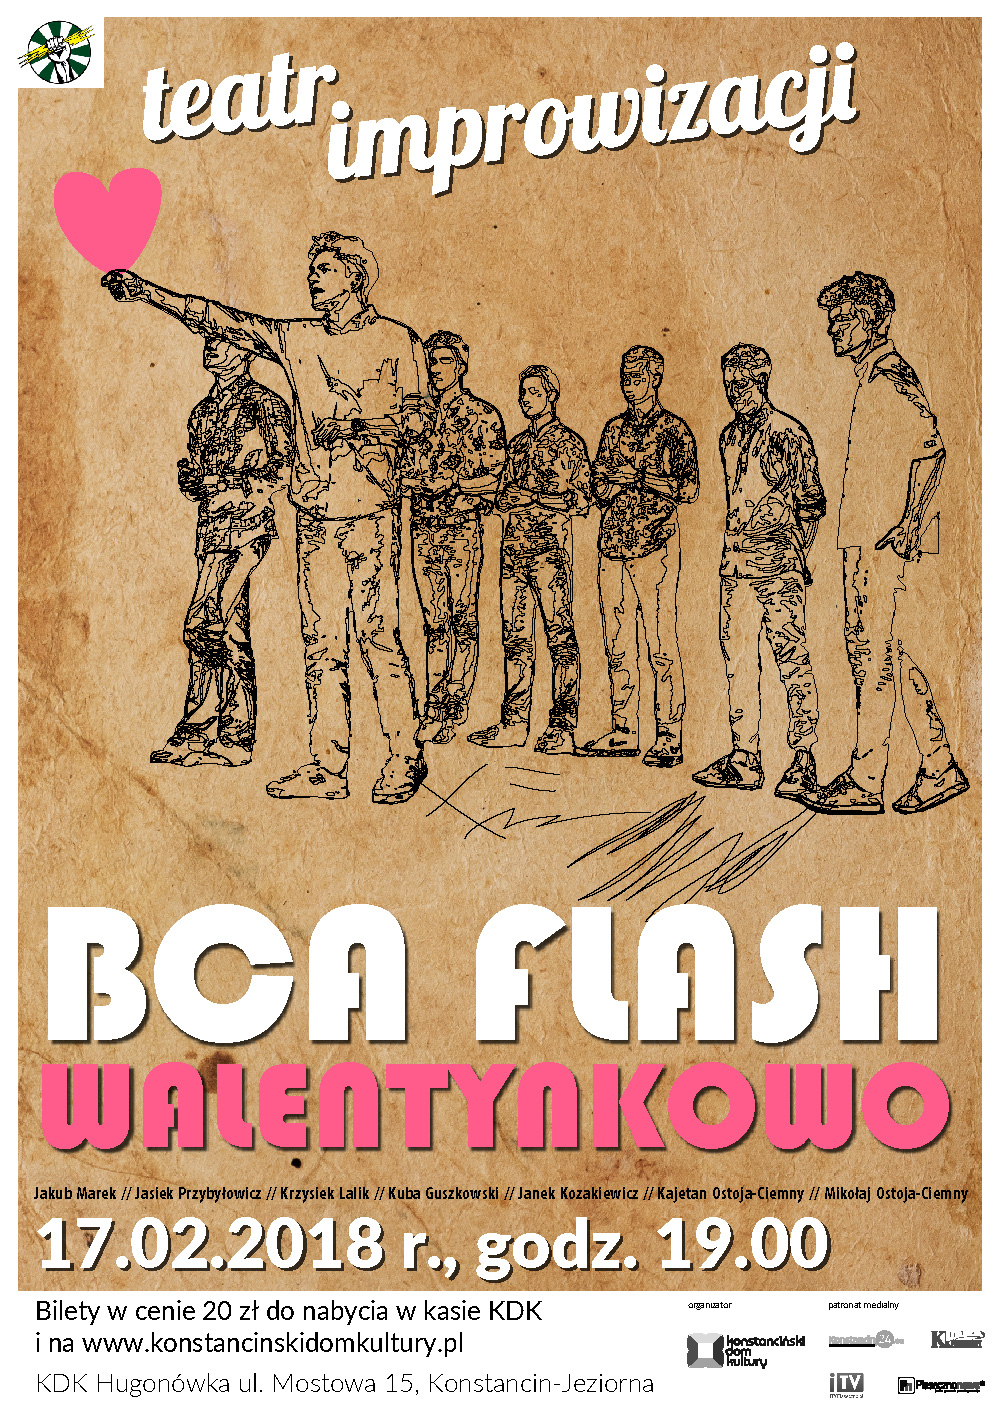 BCA FLASH WALENTYNKOWO